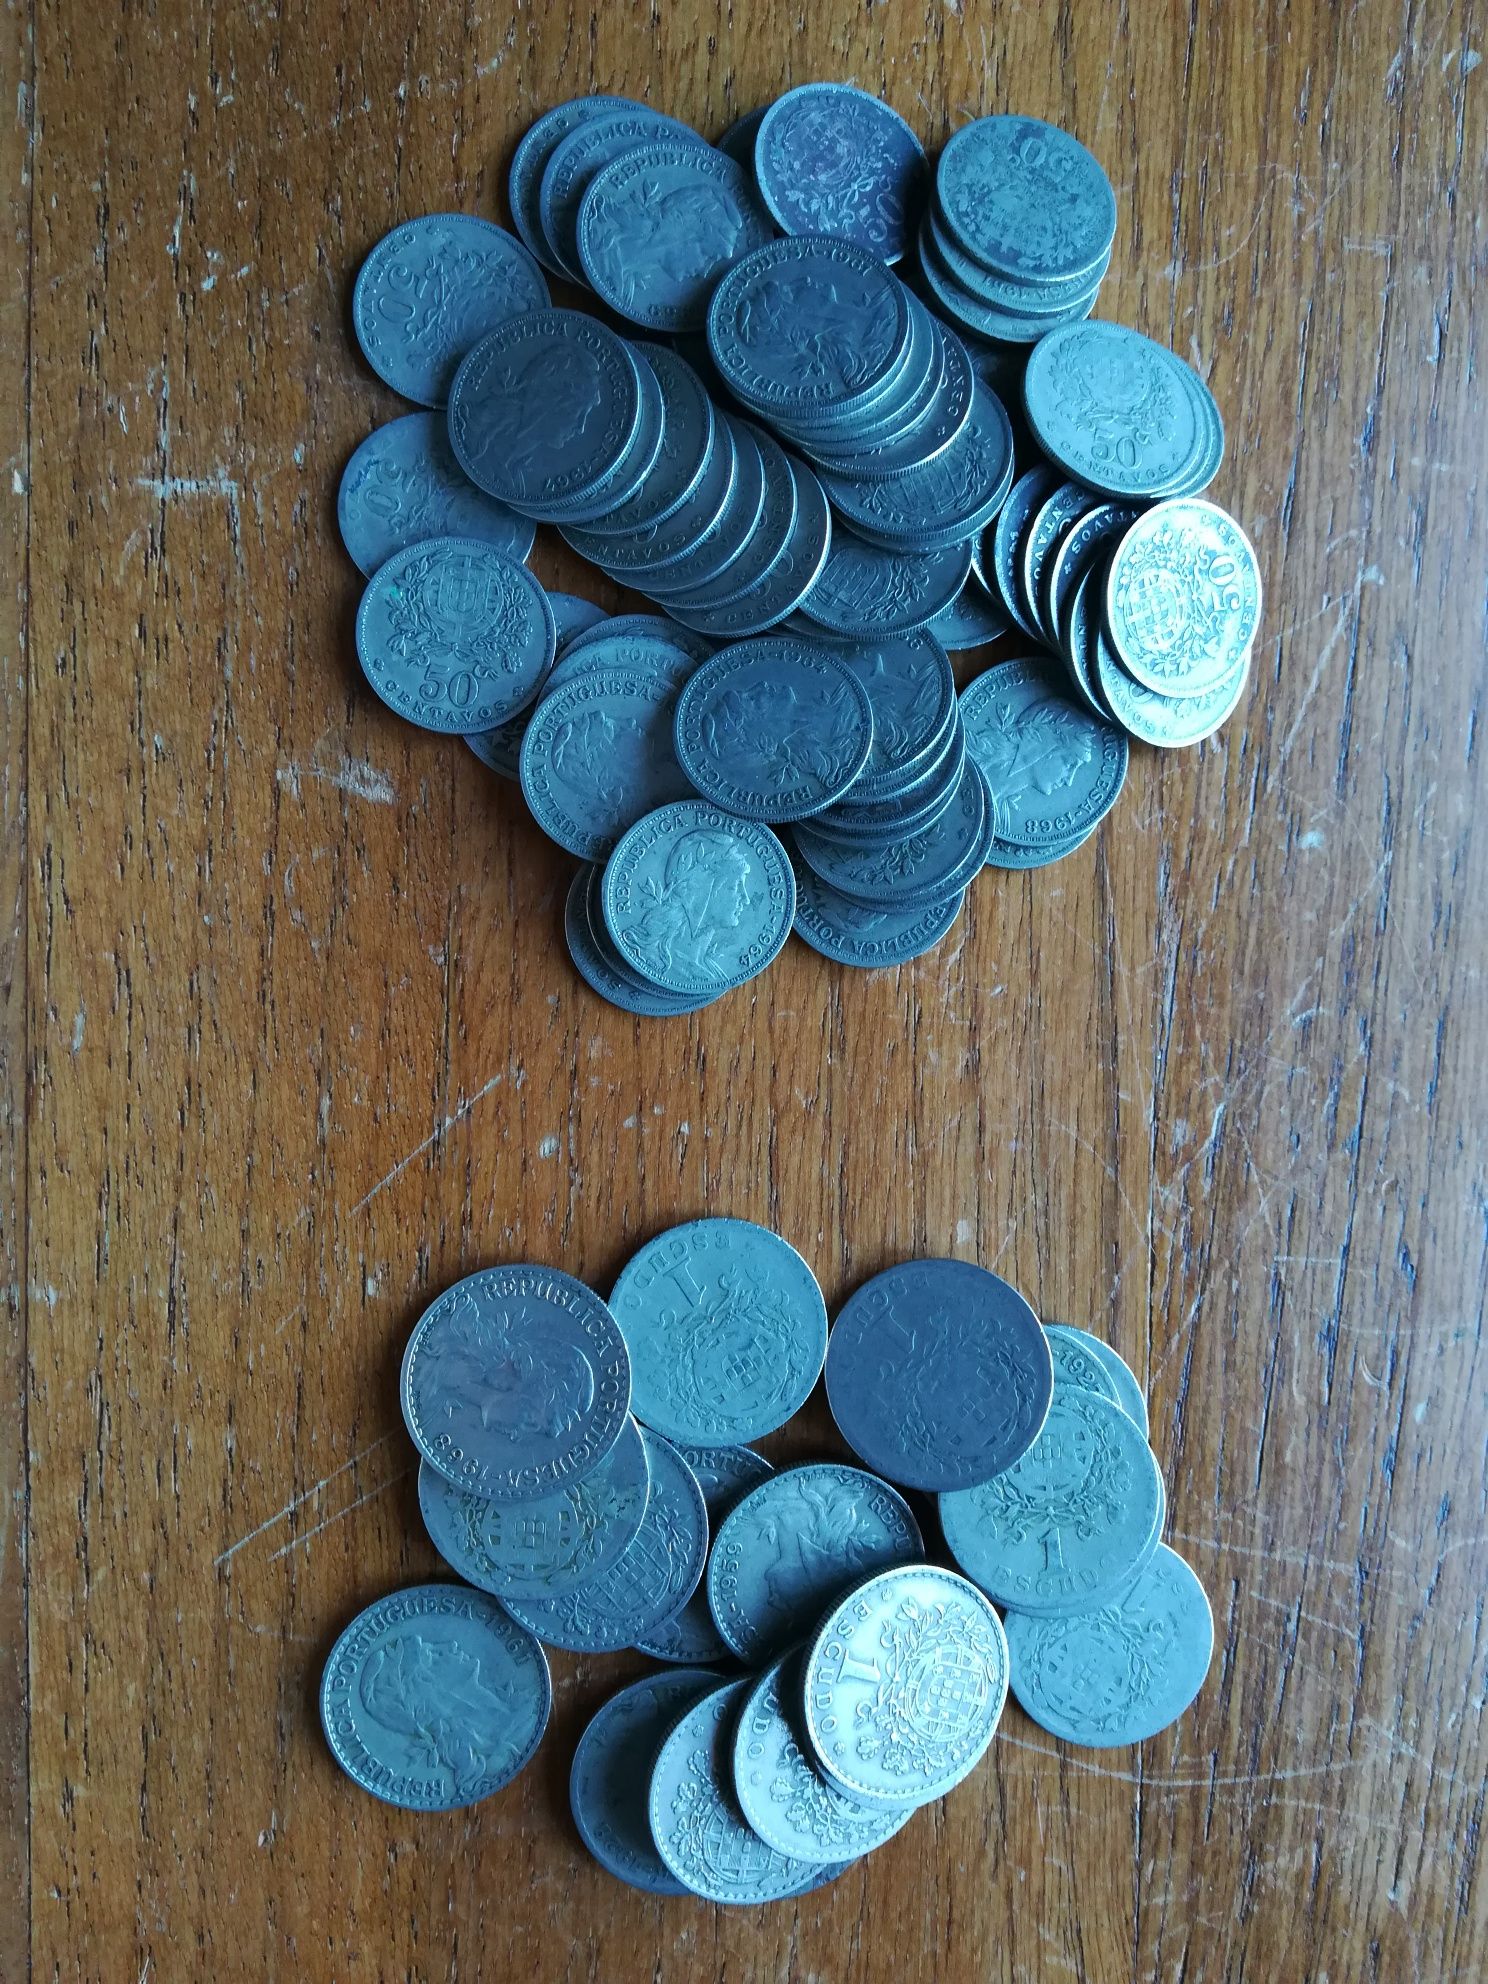 Moedas 1 esc 50 cent e 4 centavos